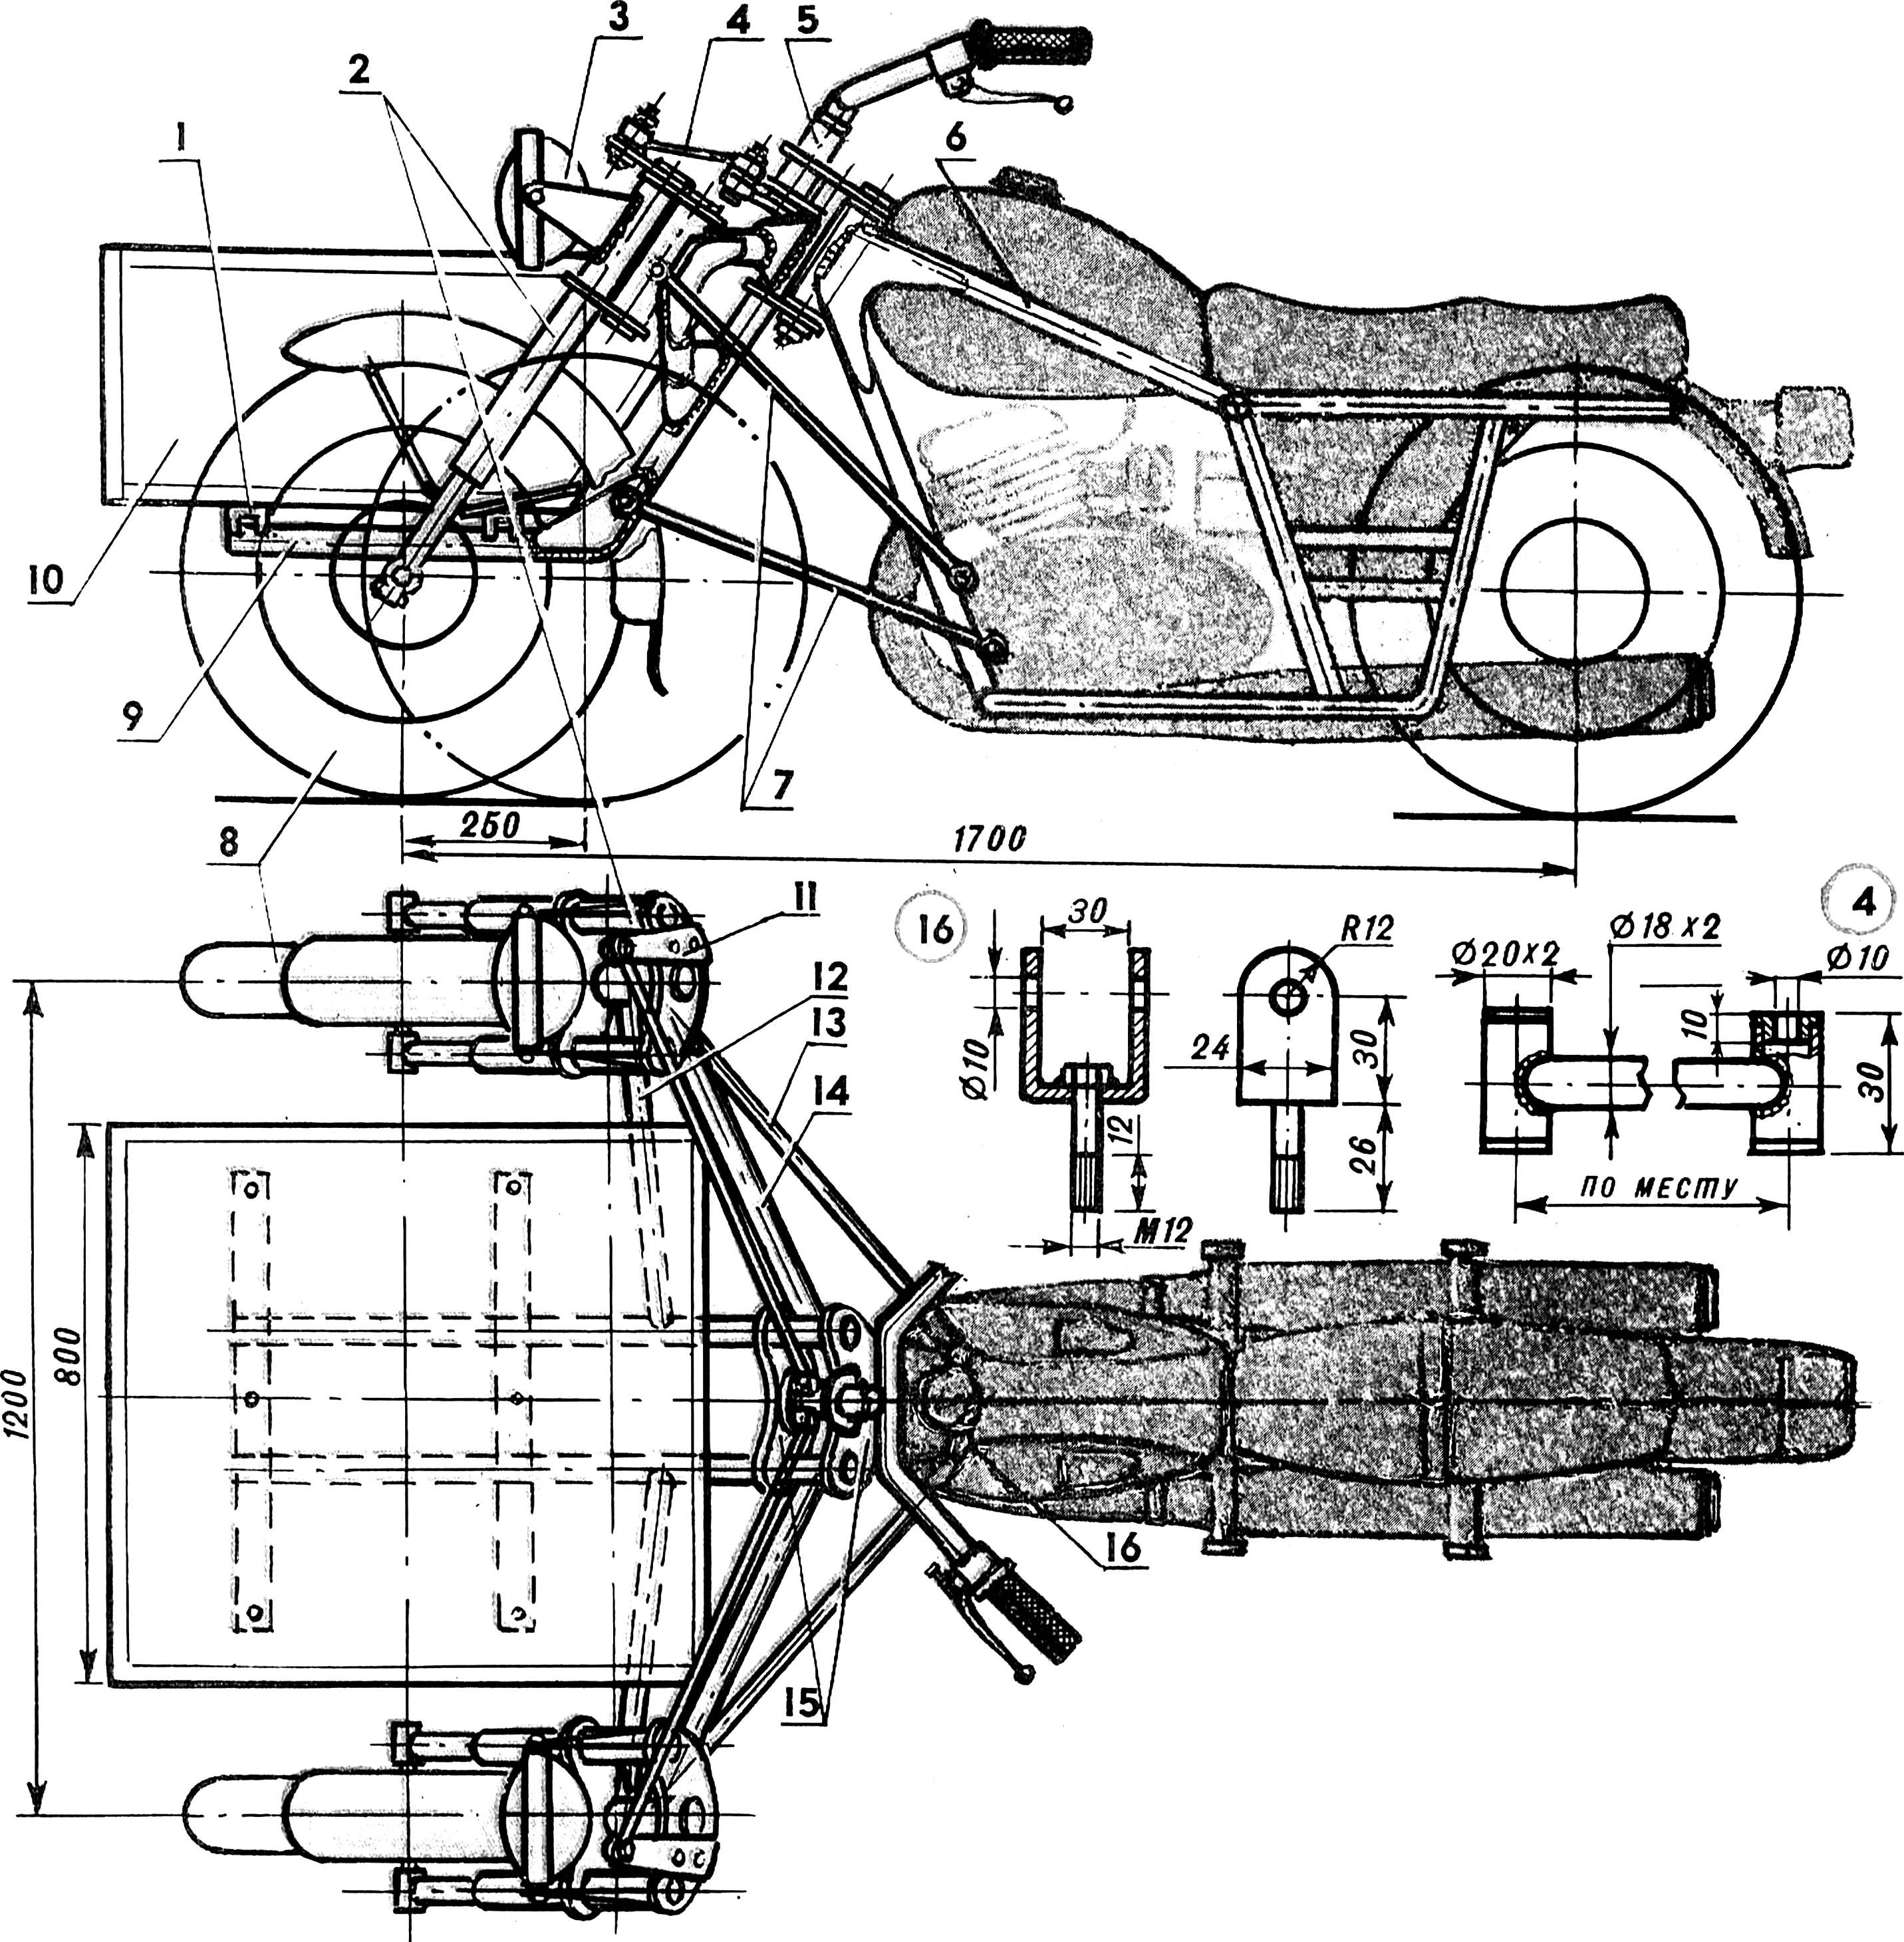 ИЖ Планета 2 — технические характеристики, описание мотоцикла